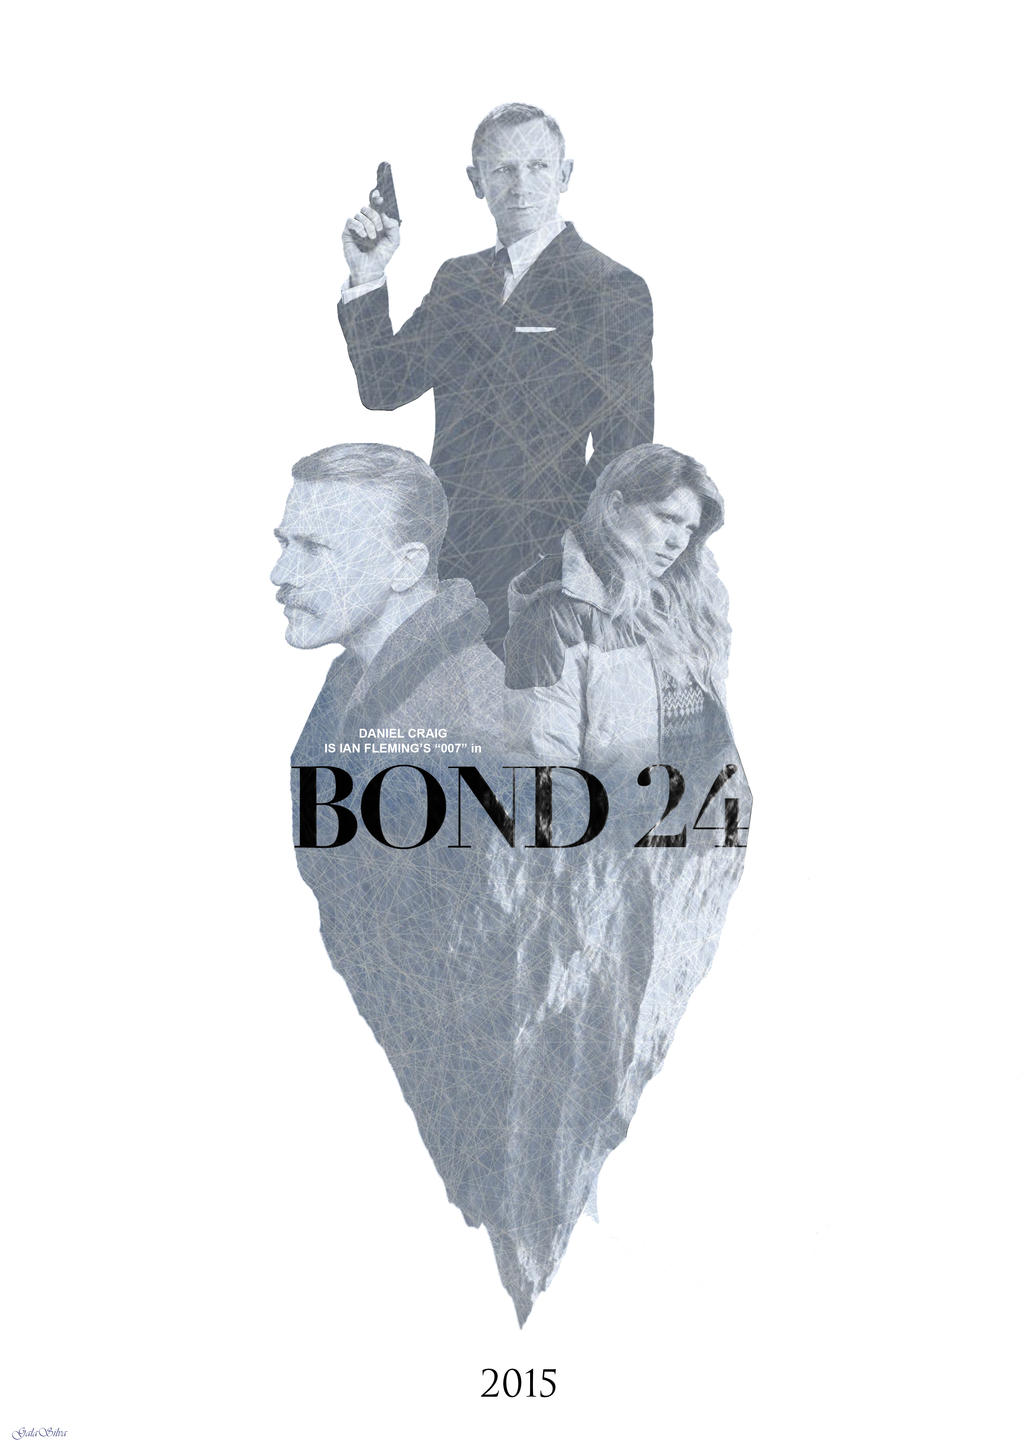 bond_24_teaser_poster_by_galasilva-d87wo